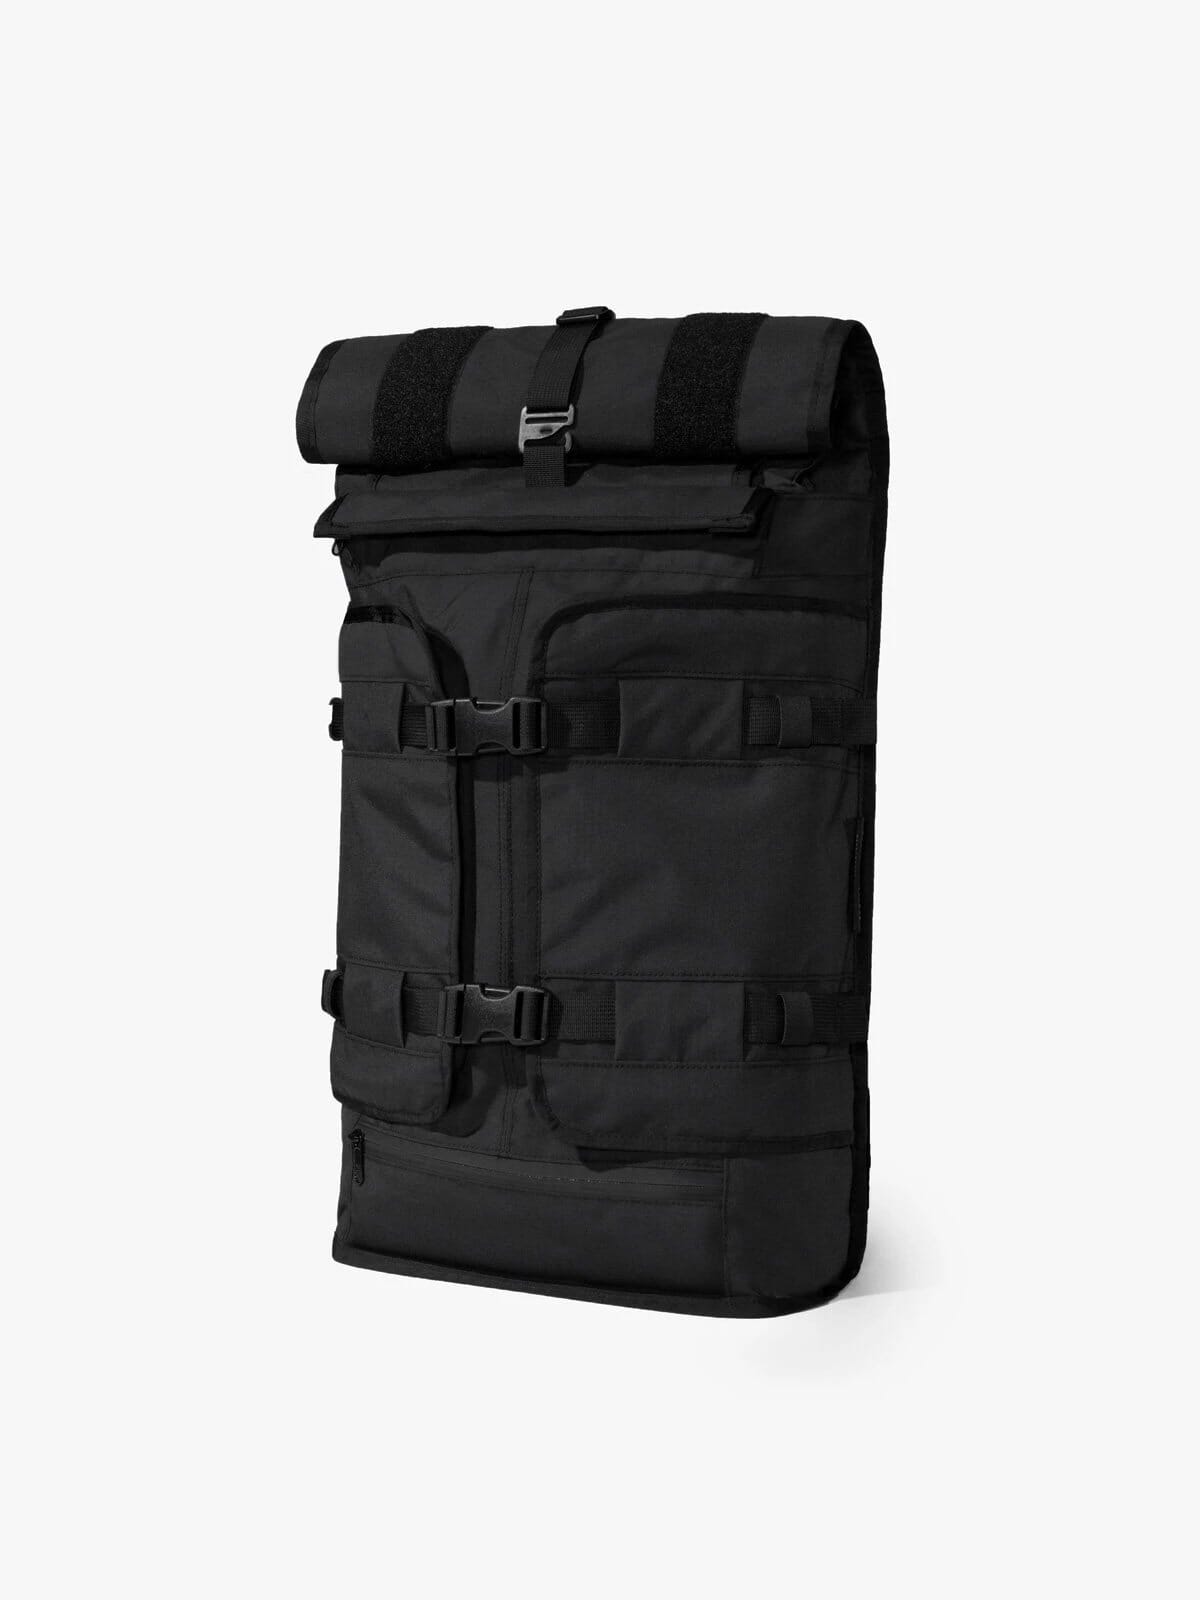 Rhake : Weatherproof Laptop Backpack | MISSION WORKSHOP